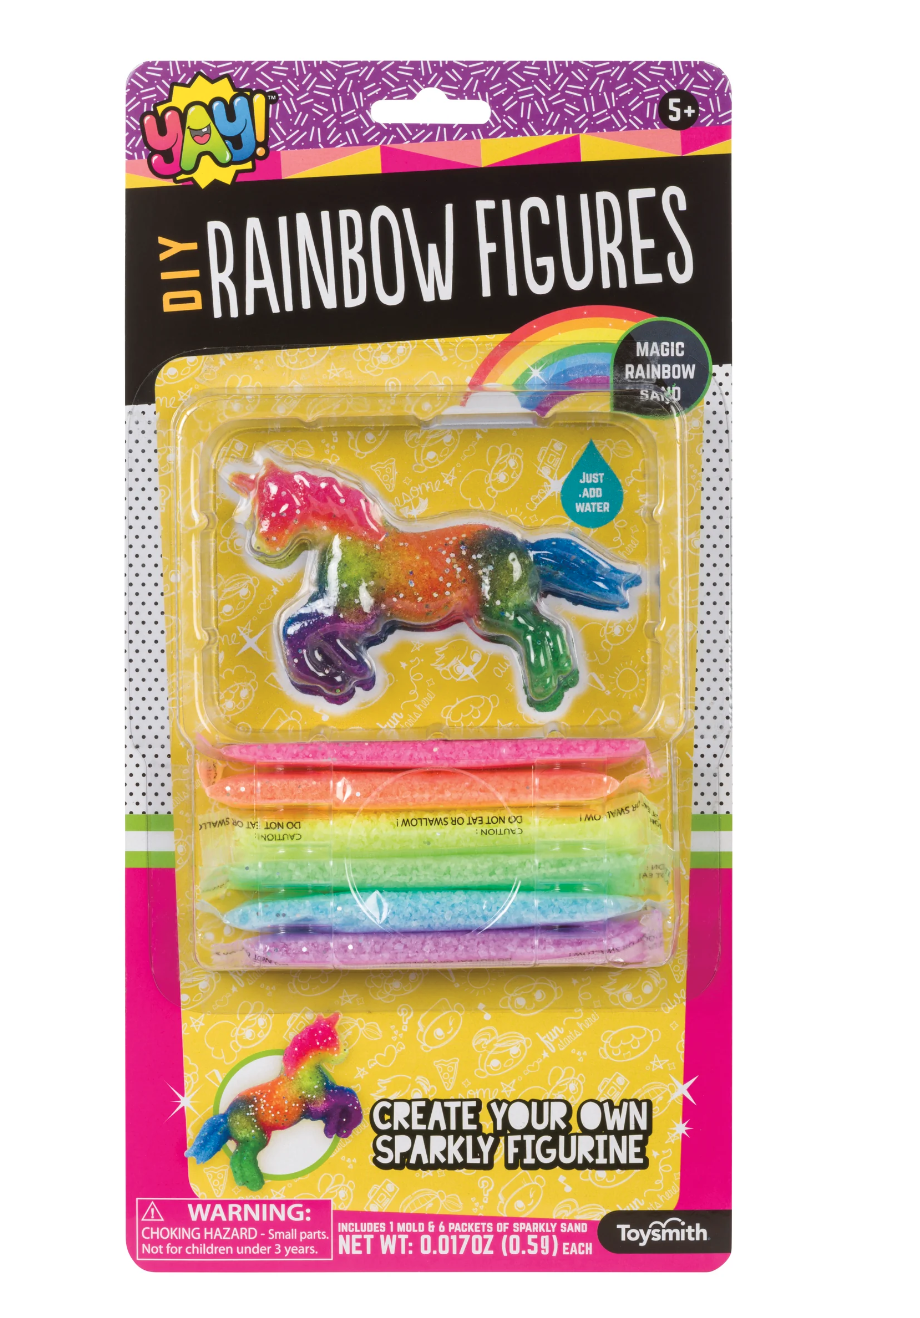 DIY Rainbow Magic Sand Figure's-Unicorn or Dolphin